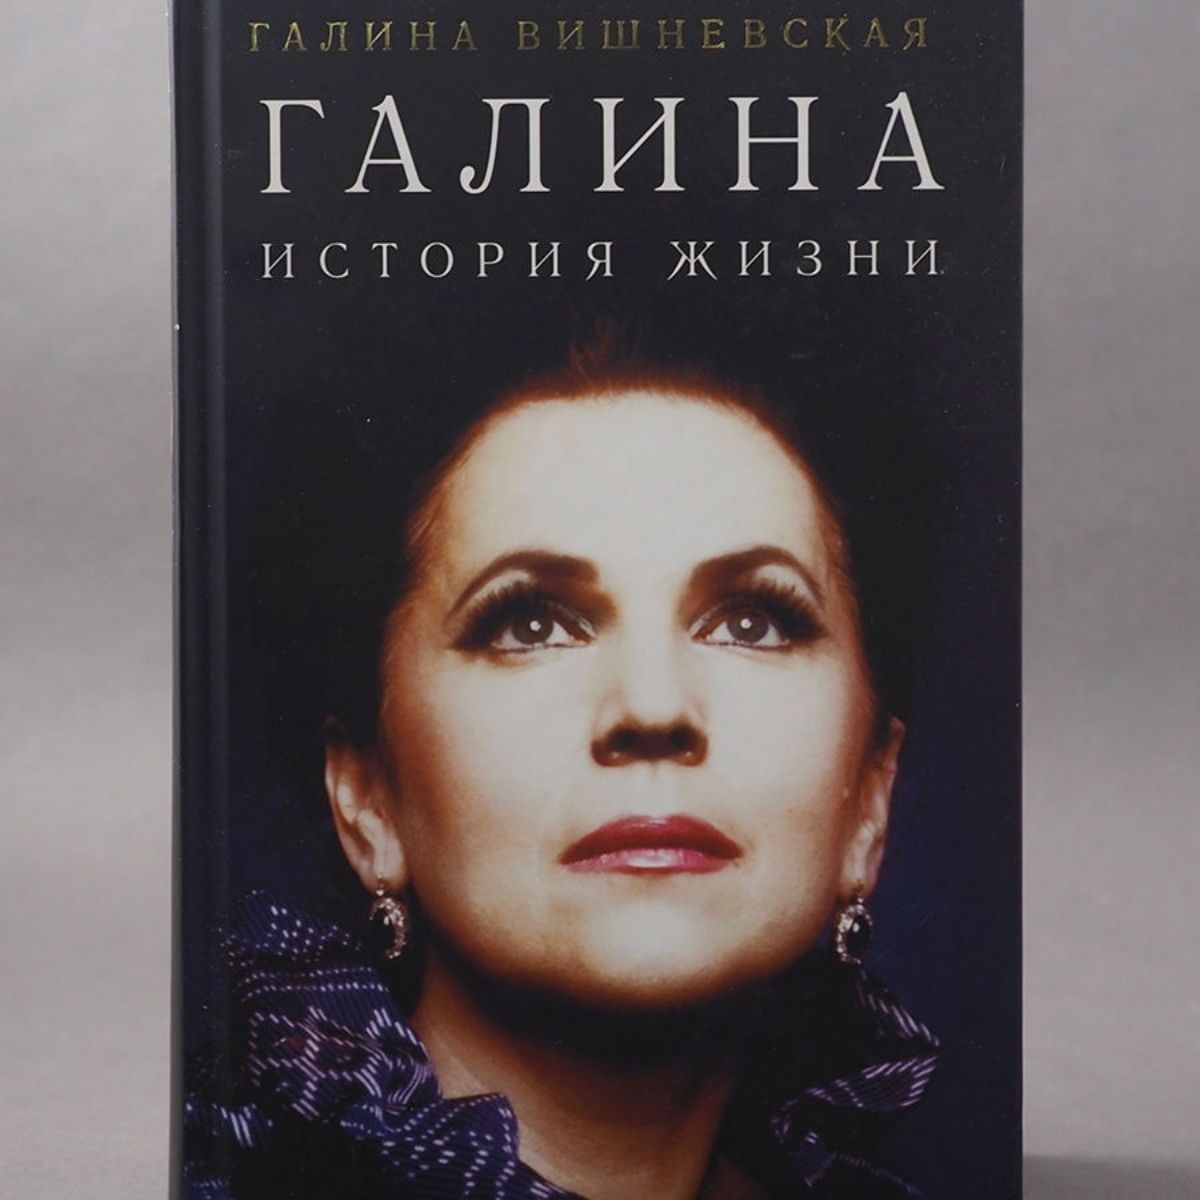 Le livre de Galina Pavlovna Vishnevskaya intitulé "Galina : The Story of a Life".